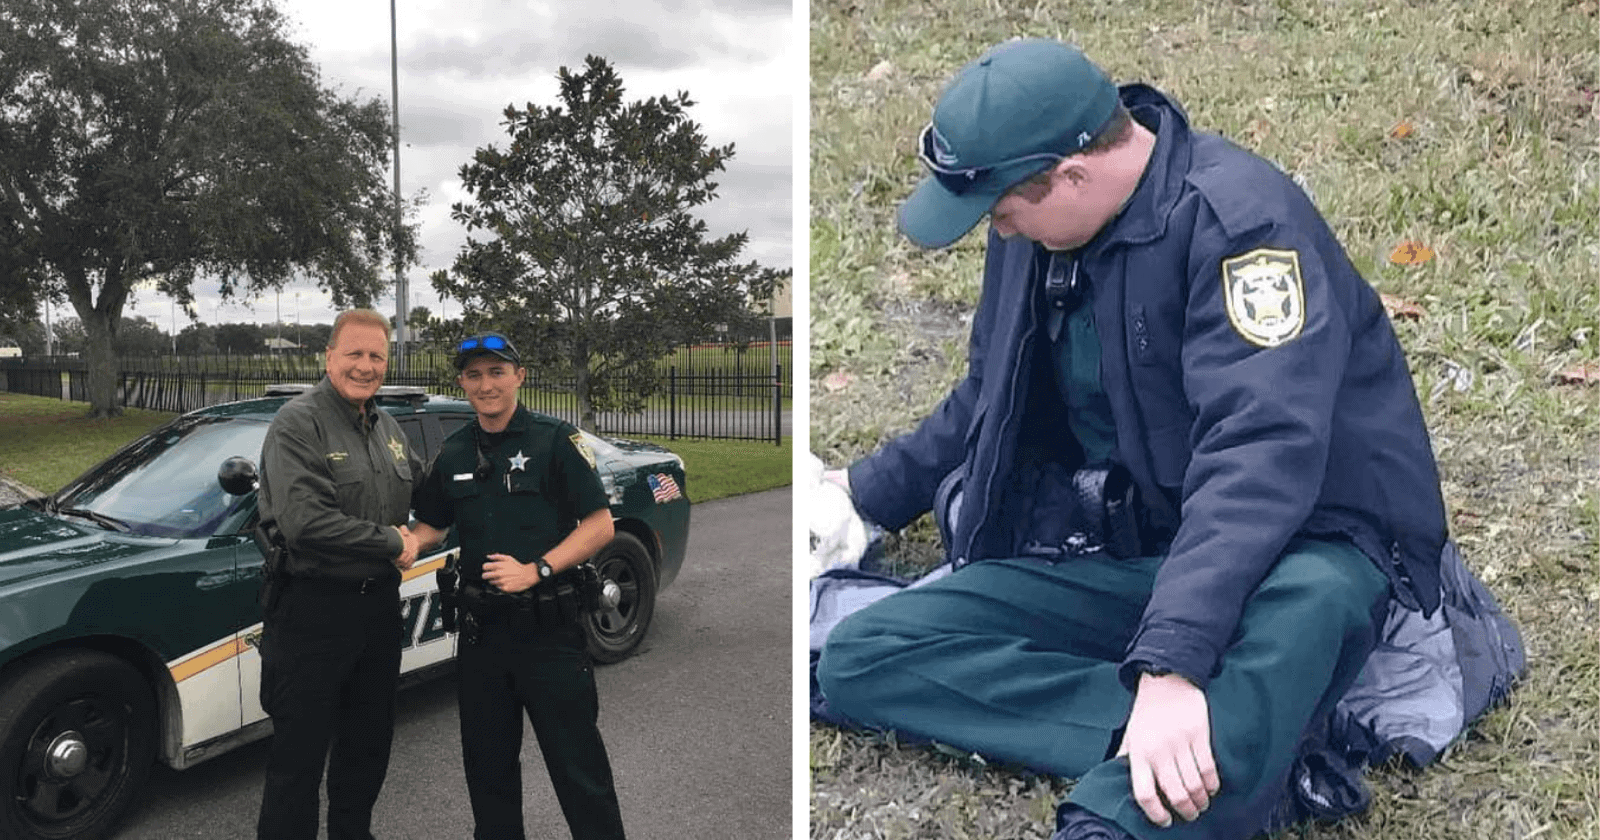 Para acalmar cachorro atropelado, policial cede seu casaco e reação do animal é comovente